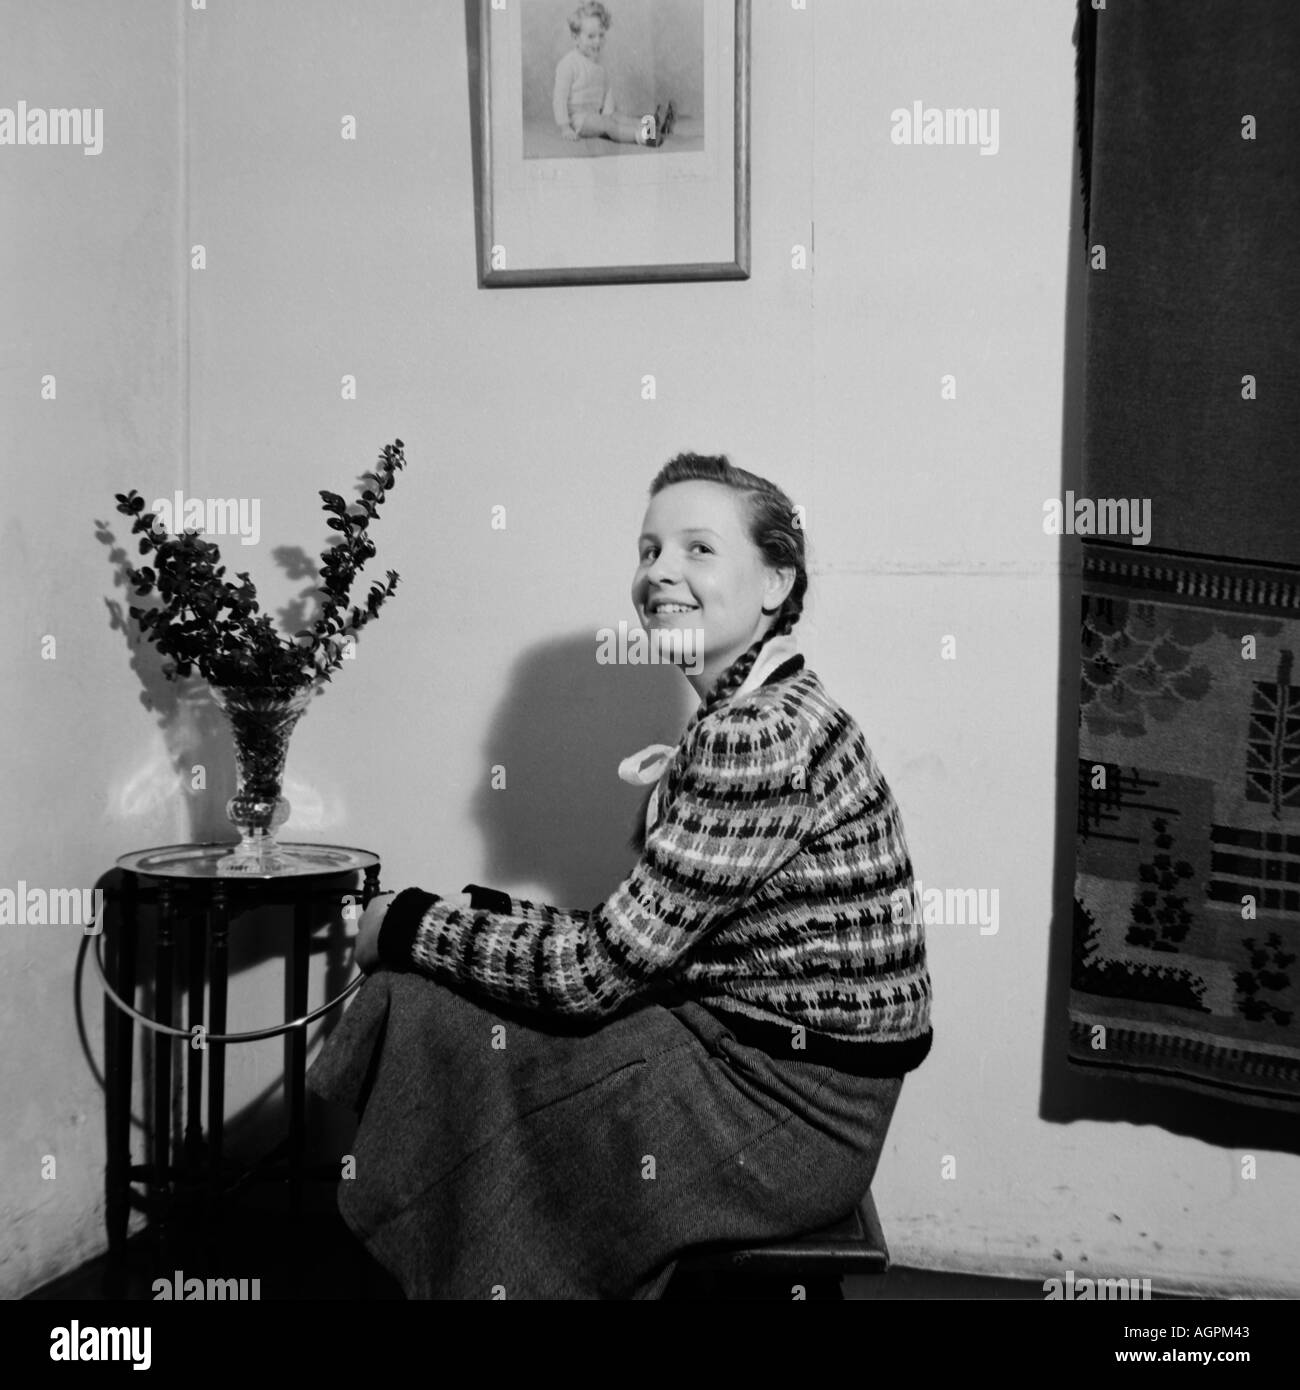 Vecchia famiglia VINTAGE FOTOGRAFIA SNAP SHOT ragazza seduta su uno sgabello accanto al tavolo con vaso di fiori del 1950 circa Foto Stock